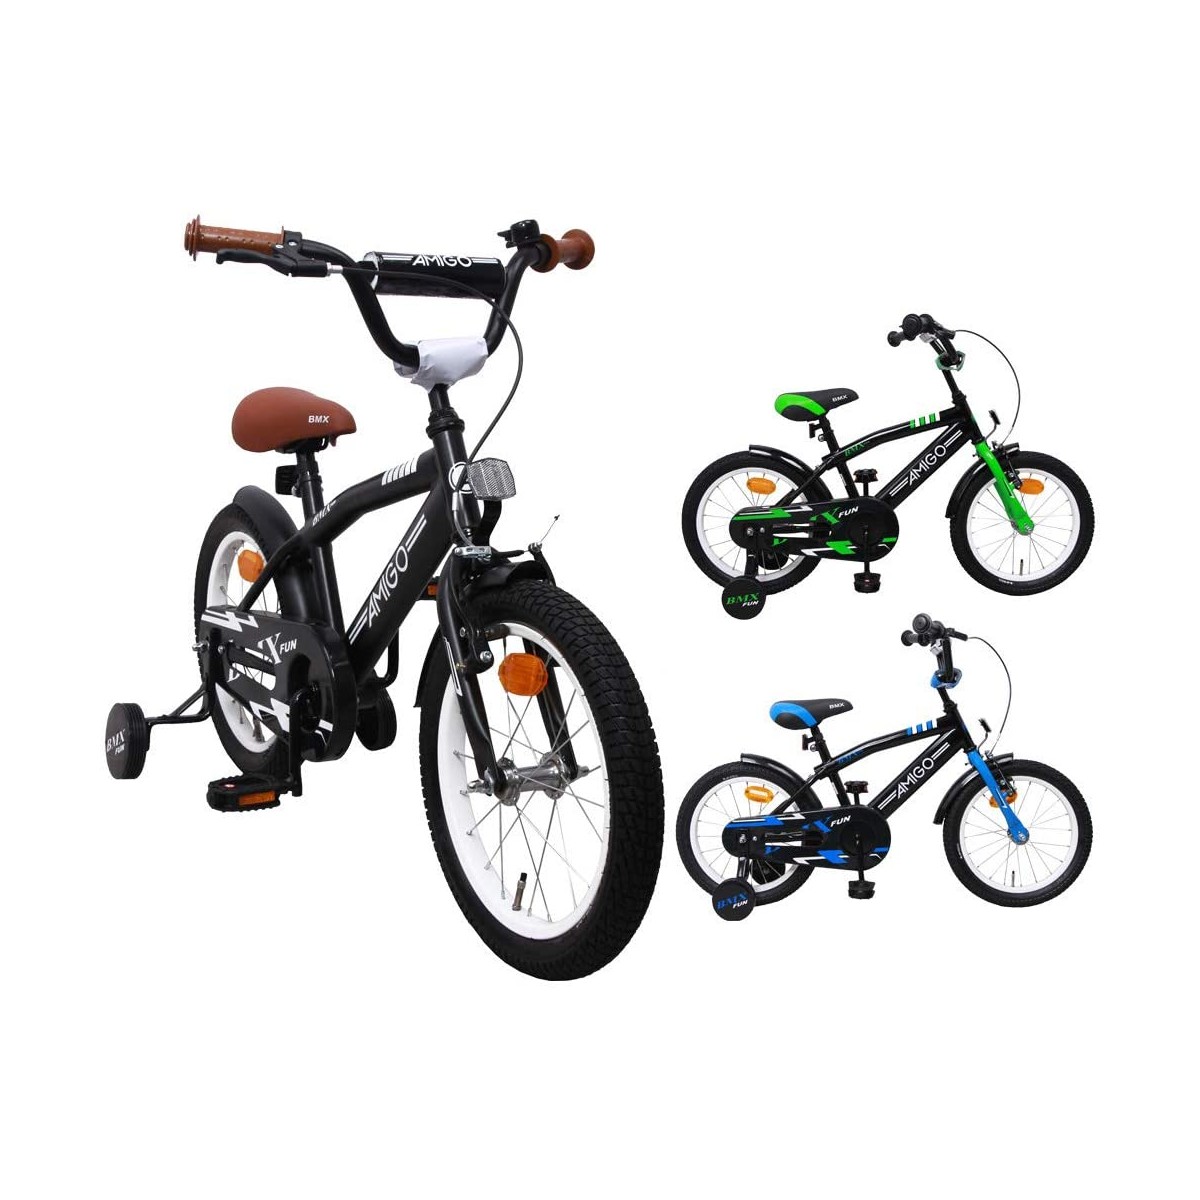 Bicicletta BMX con freno a mano Nero/Blu Amigo Fly Bicicletta per bambini 16 pollici Per ragazzi e ragazze dai 4 ai 6 anni 